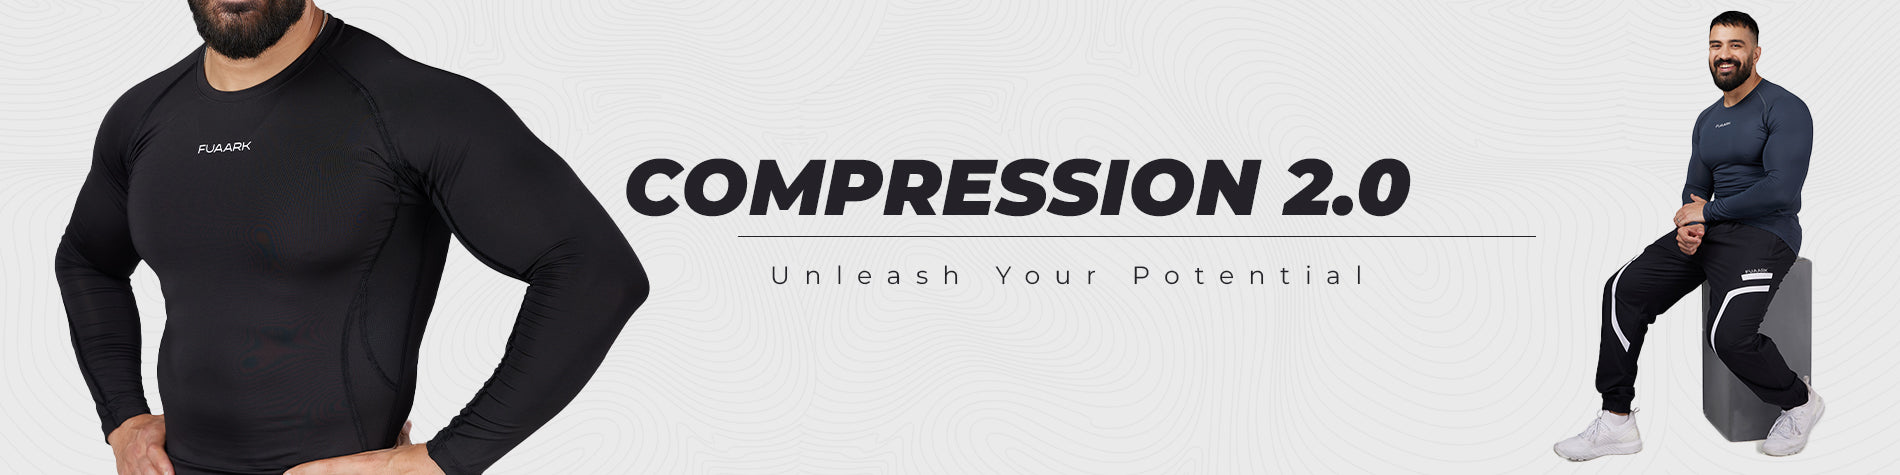 Fuaark Gym Compression Grey Tights